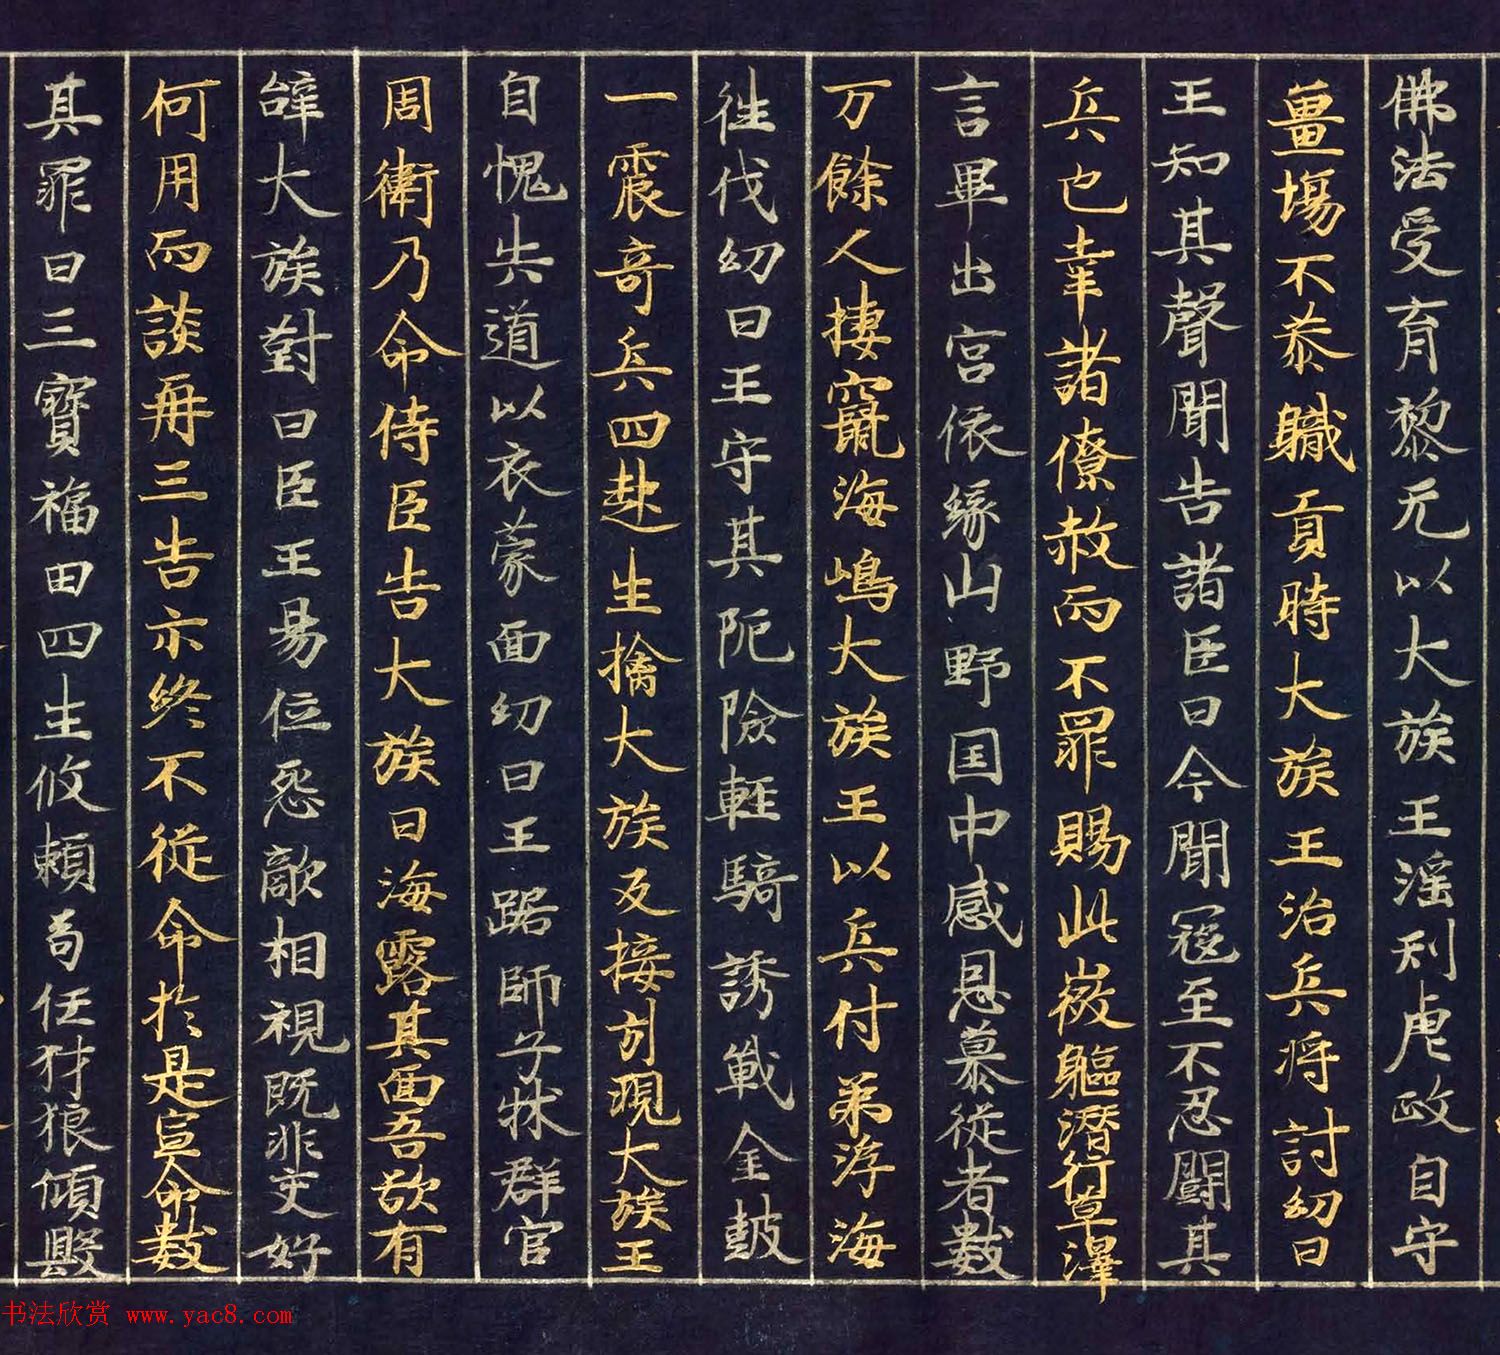 12世纪绀纸金银交替书写《大唐西域记卷四》